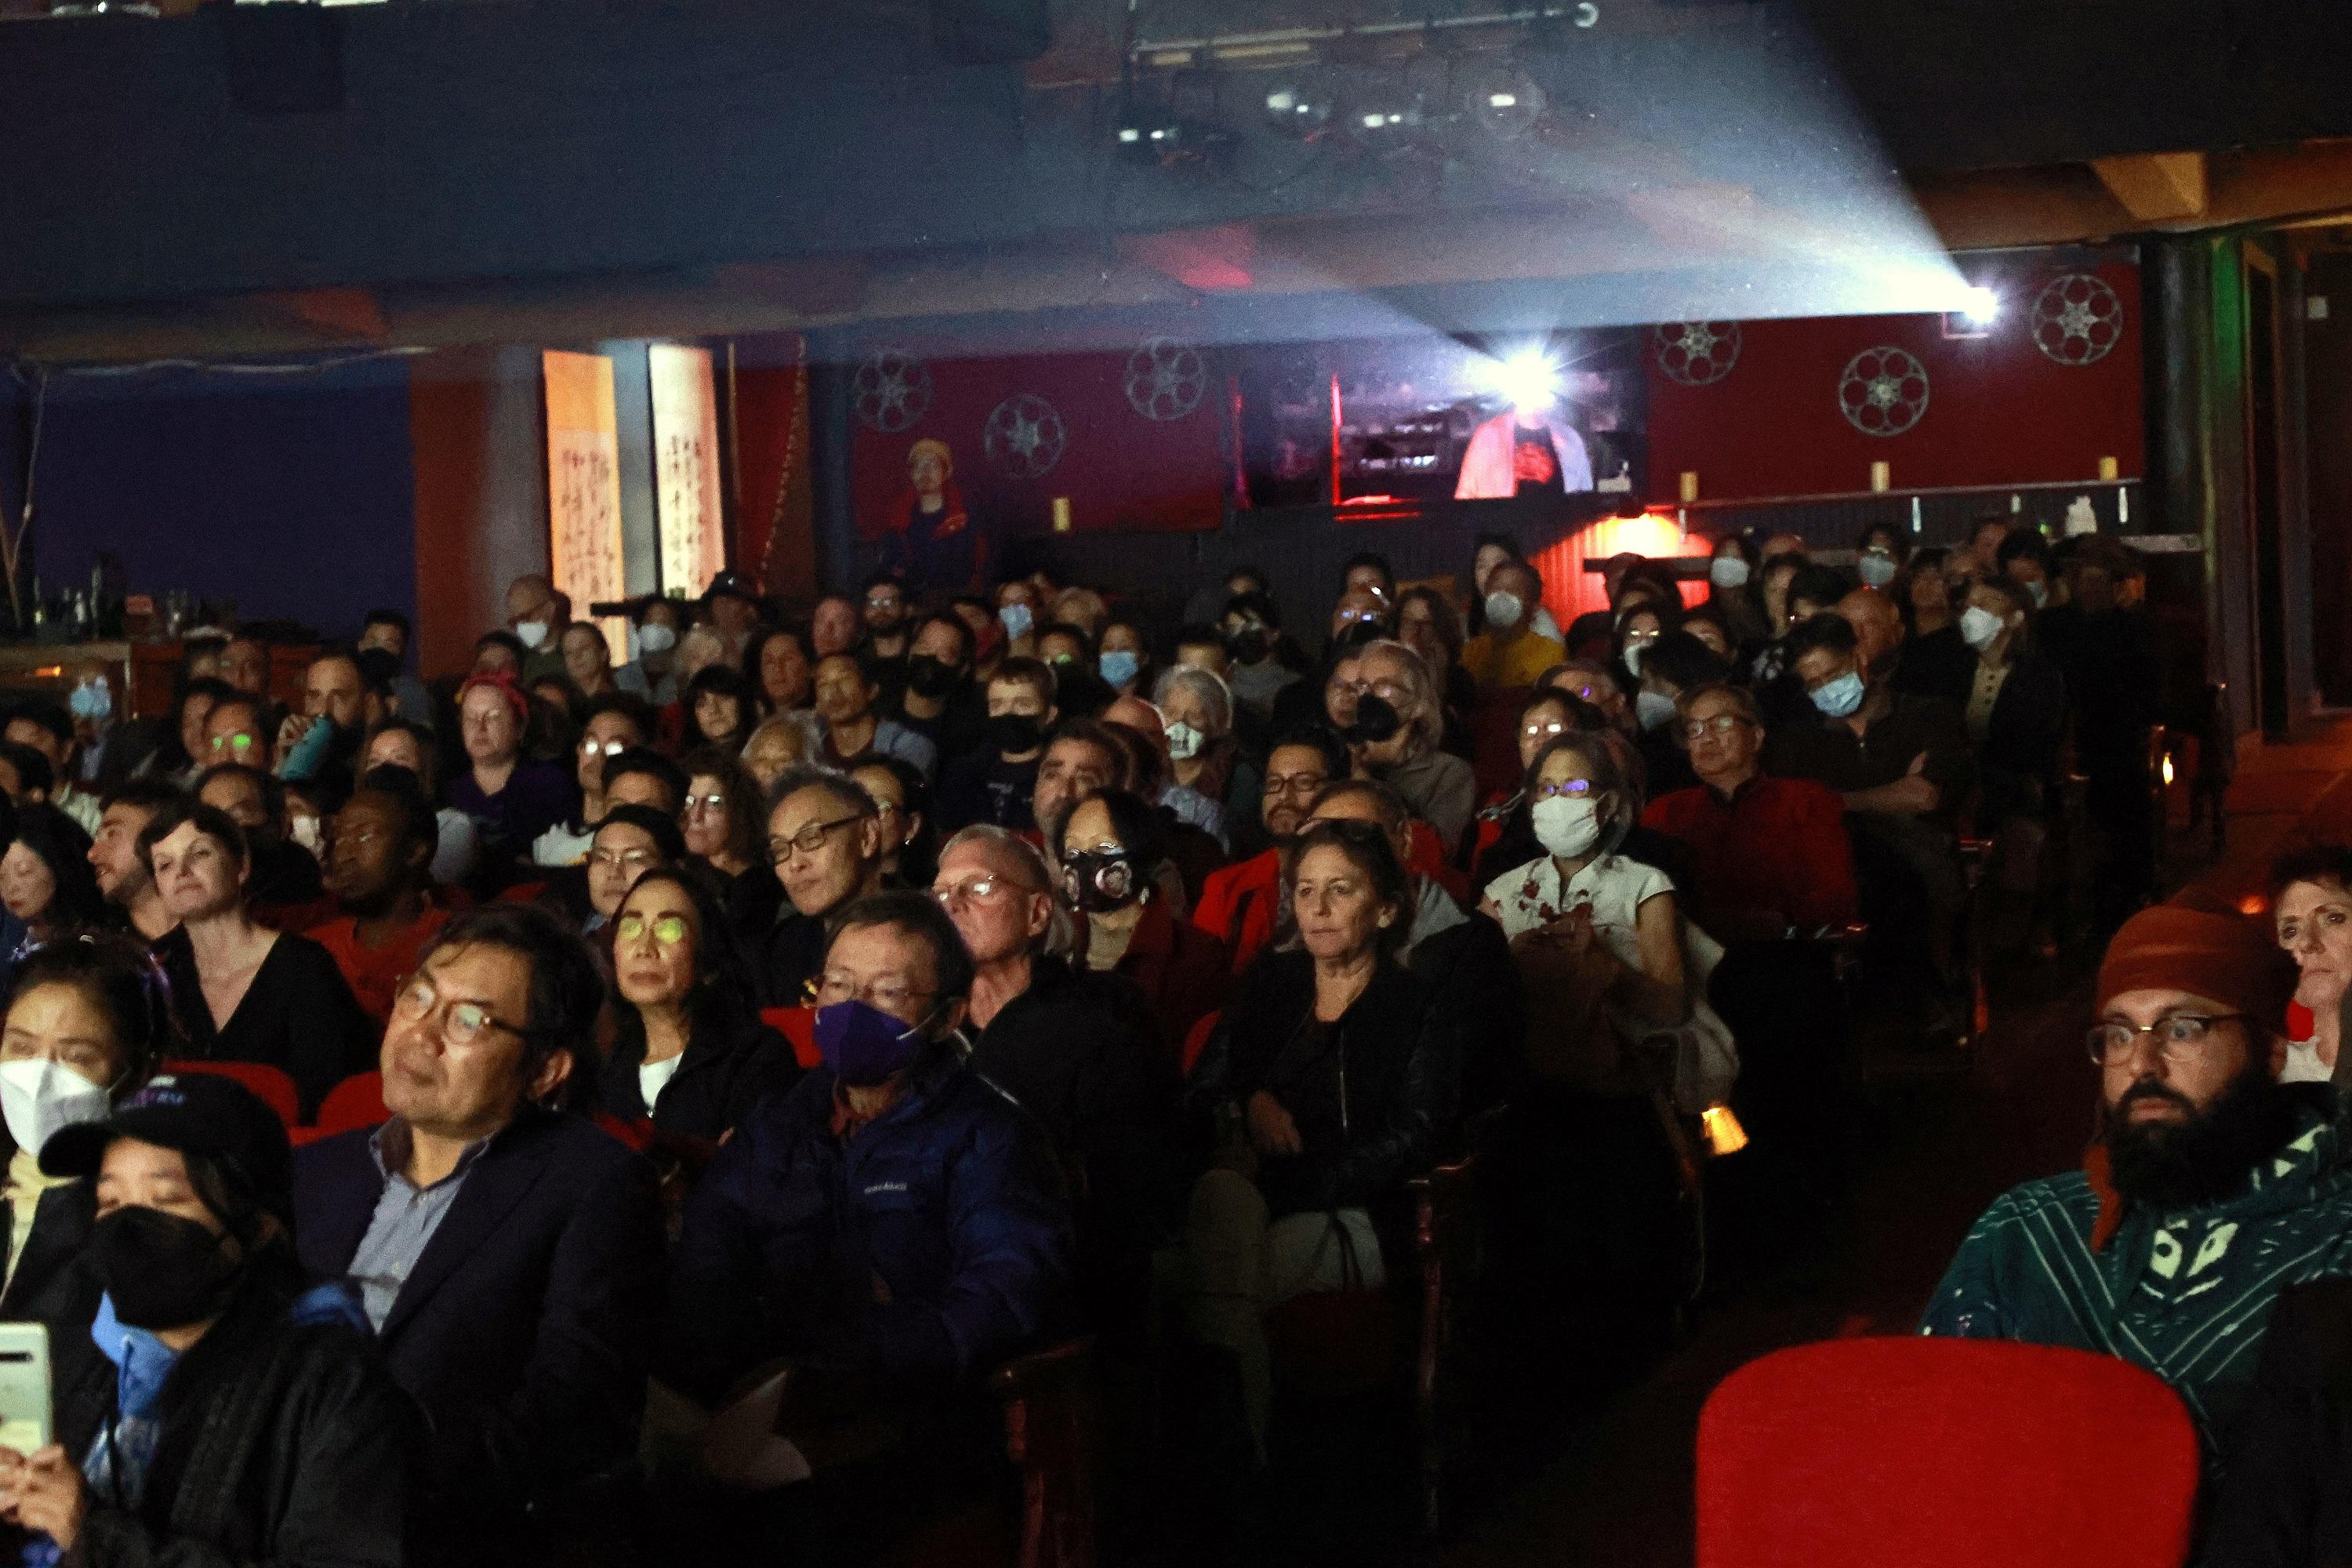 香港驻三藩市经济贸易办事处与美国华人历史学会在三藩市合作举办「光芒四射李小龙：星光下的电影」电影系列。图示十一月二十七日 （三藩市时间）举行的《猛龙过江》放映活动广受欢迎，座无虚席。